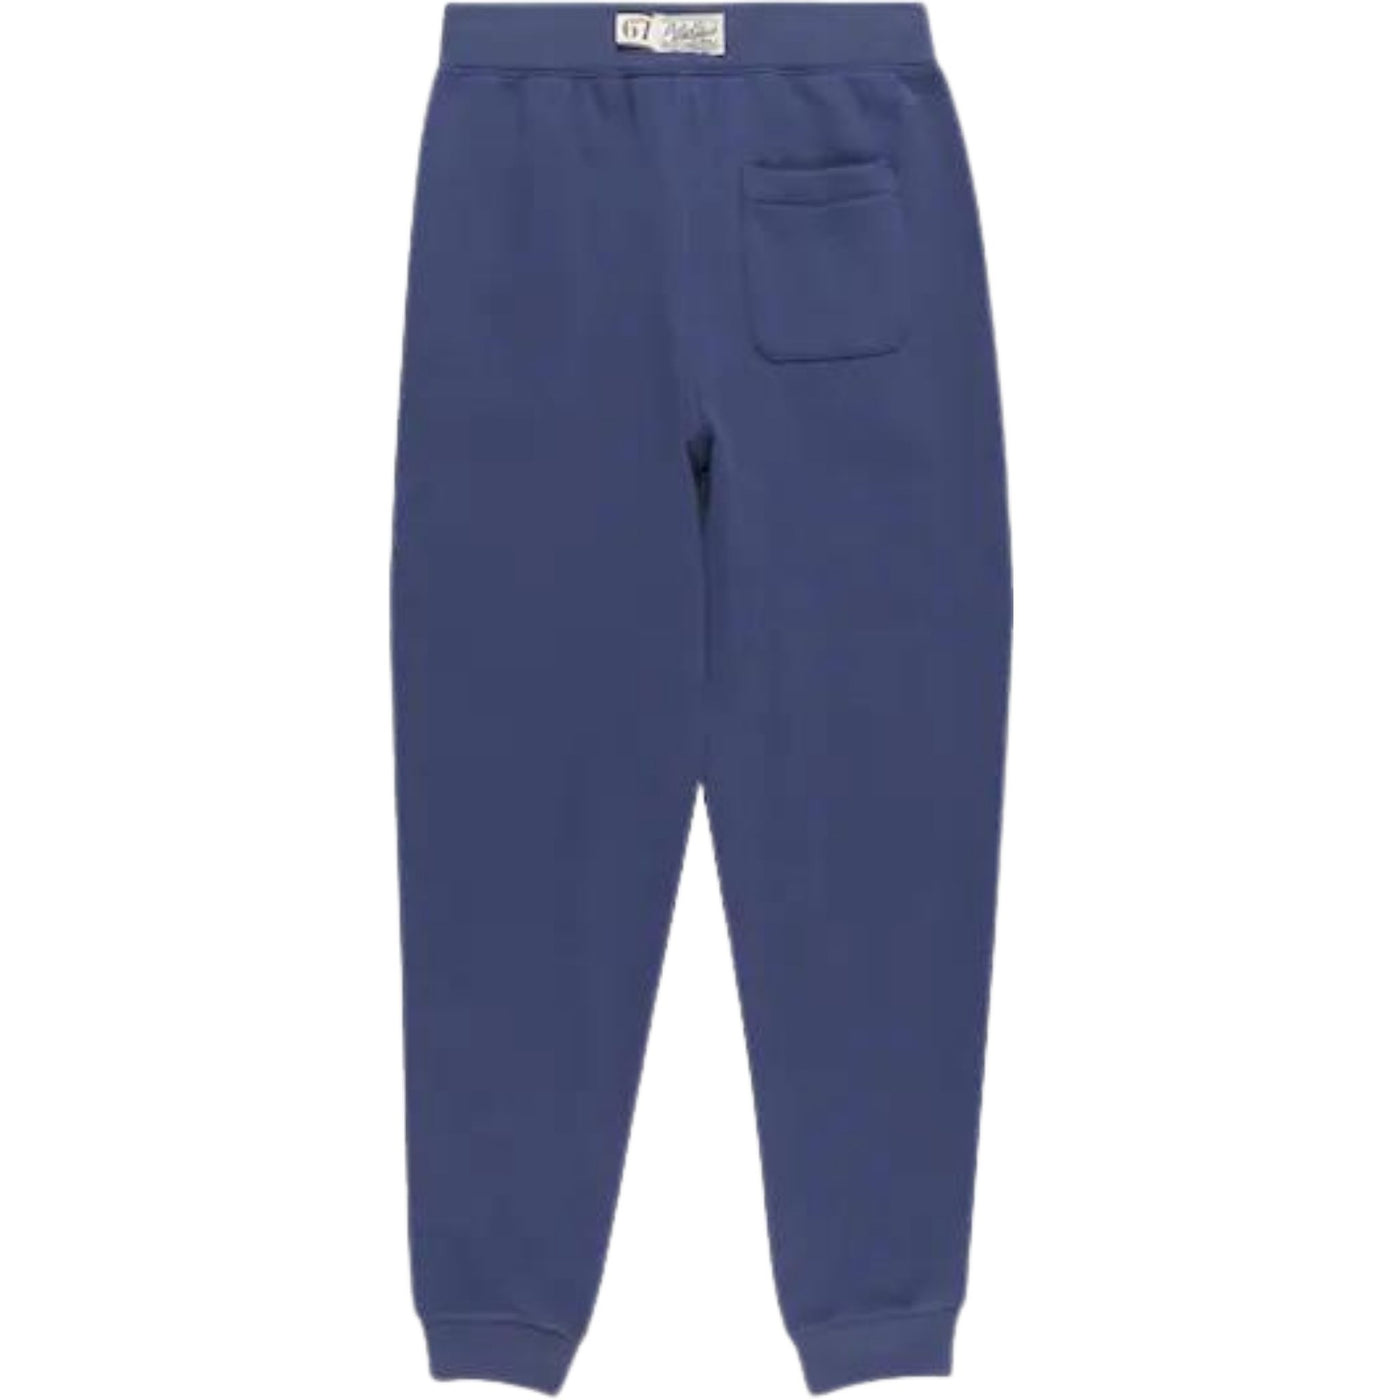 Pantalone bambino blu Polo Ralph Lauren vista retro